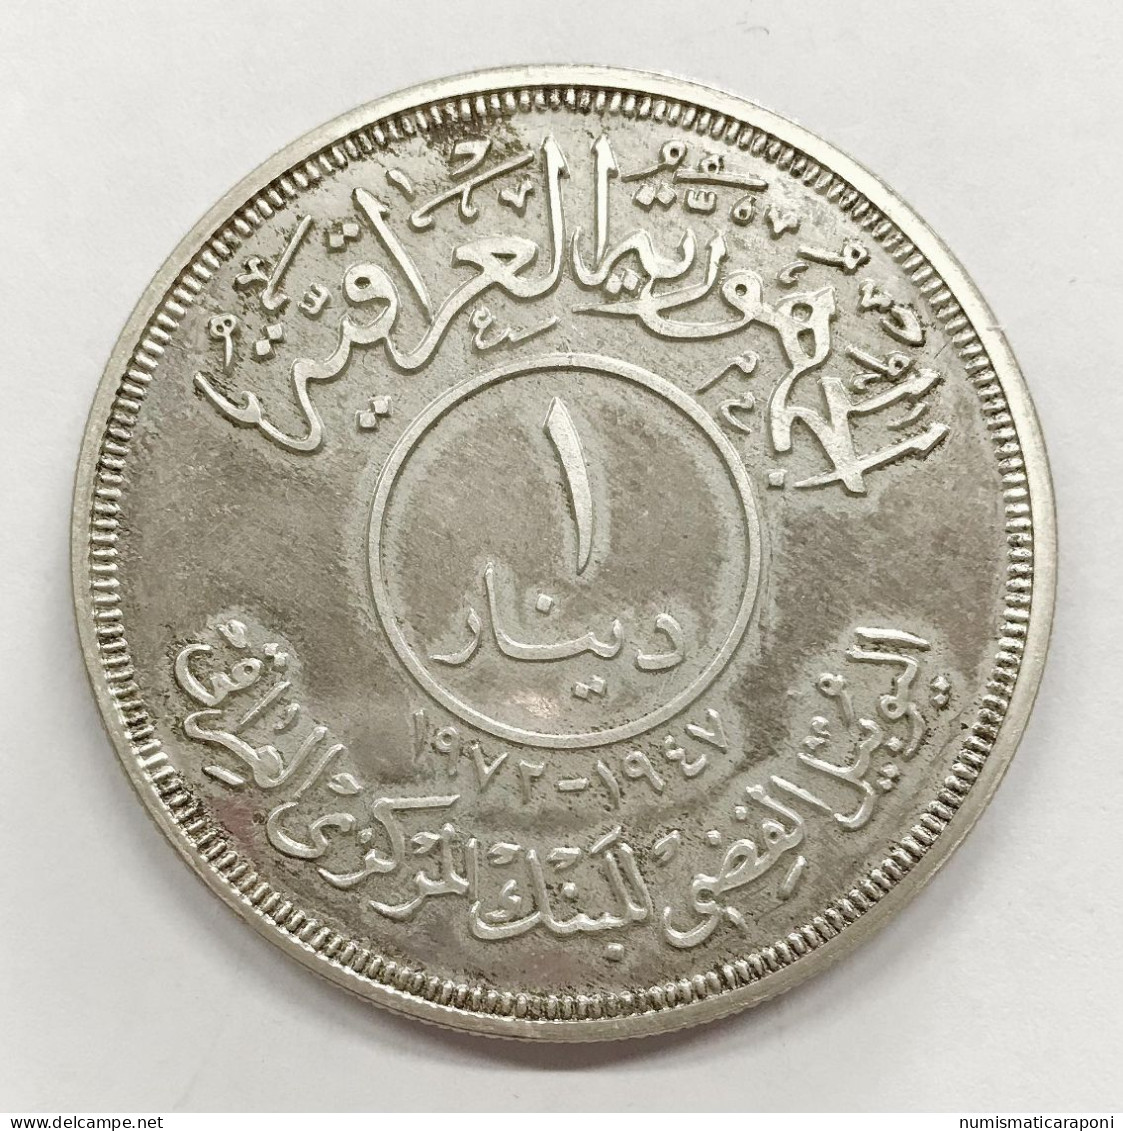 Iraq Irak Lotto Di 2 Monete Dinar 1972 Ag (AH-1932) Km#137 25 Anniversario Banca Centrale Iraq Fdc + Pf Like E.999 - Irak